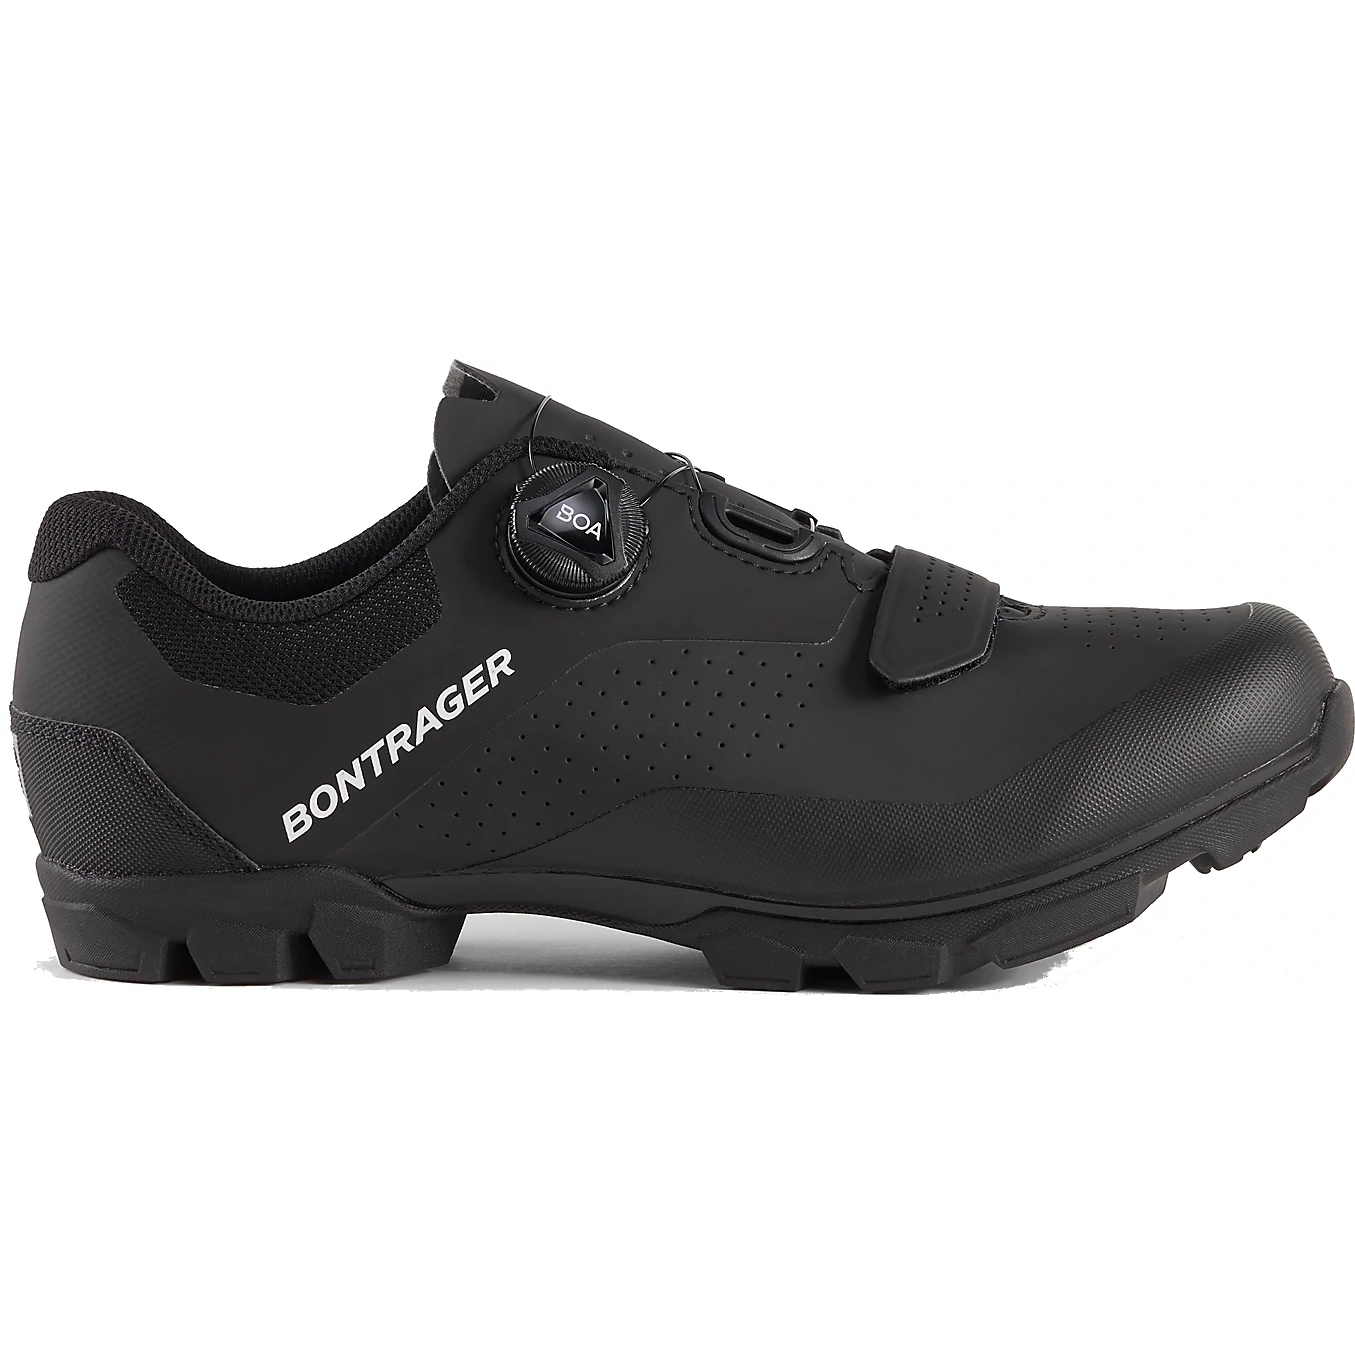 Image of Bontrager Foray Mountainbike Shoe - black